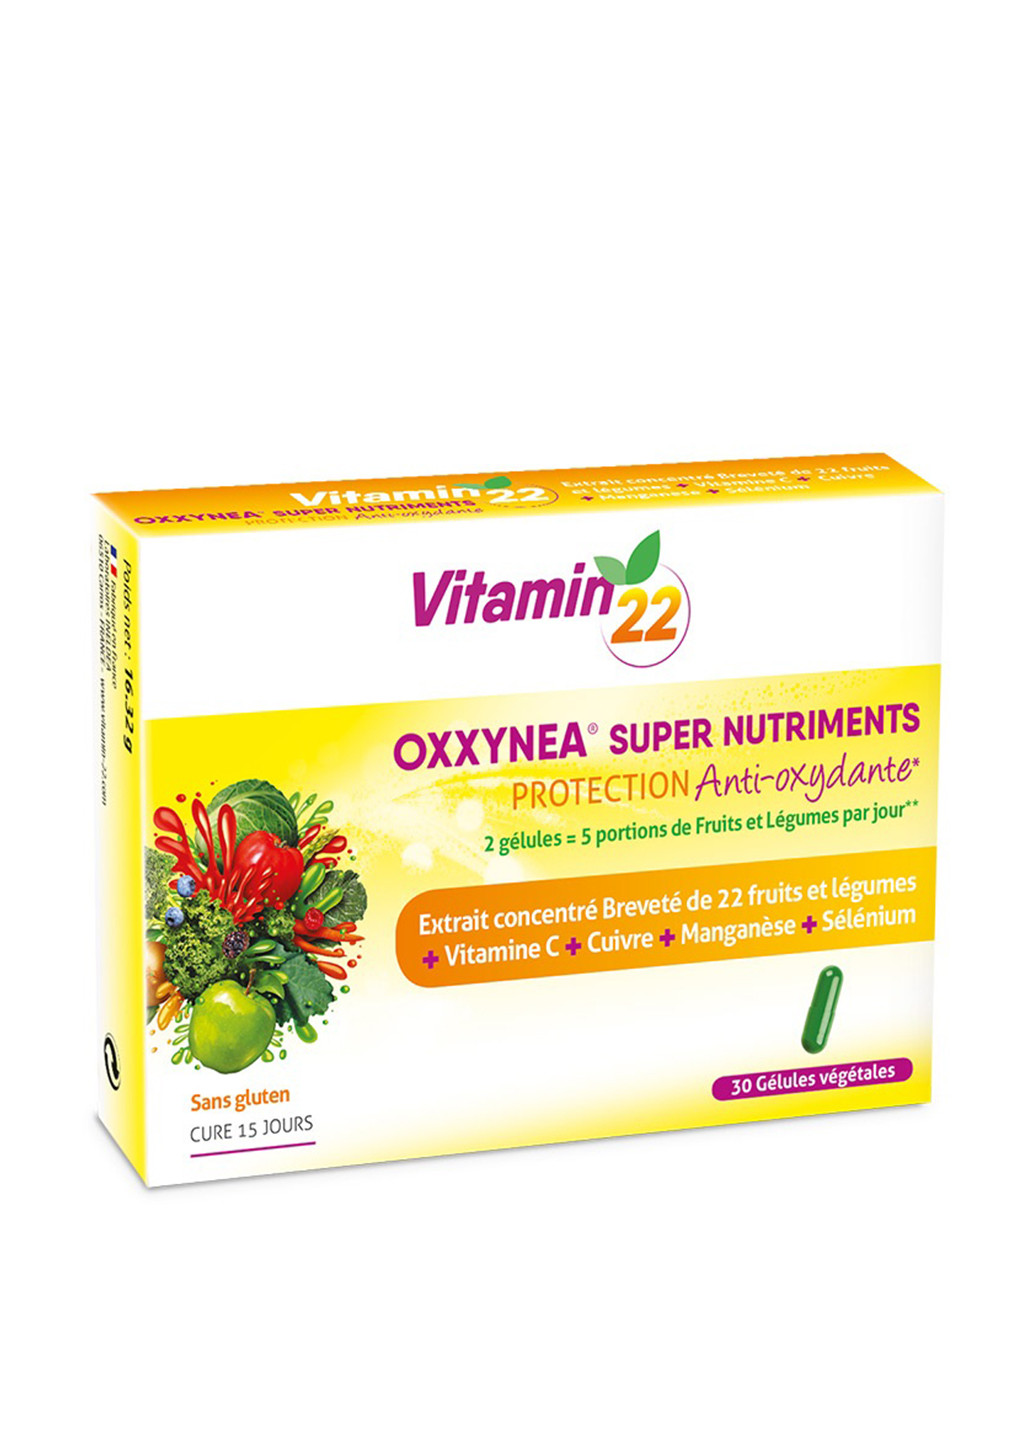 VITAMIN’22 ОККСИНЕА / OXXYNEA, 30 капсул Vitamin'22 (17020499)